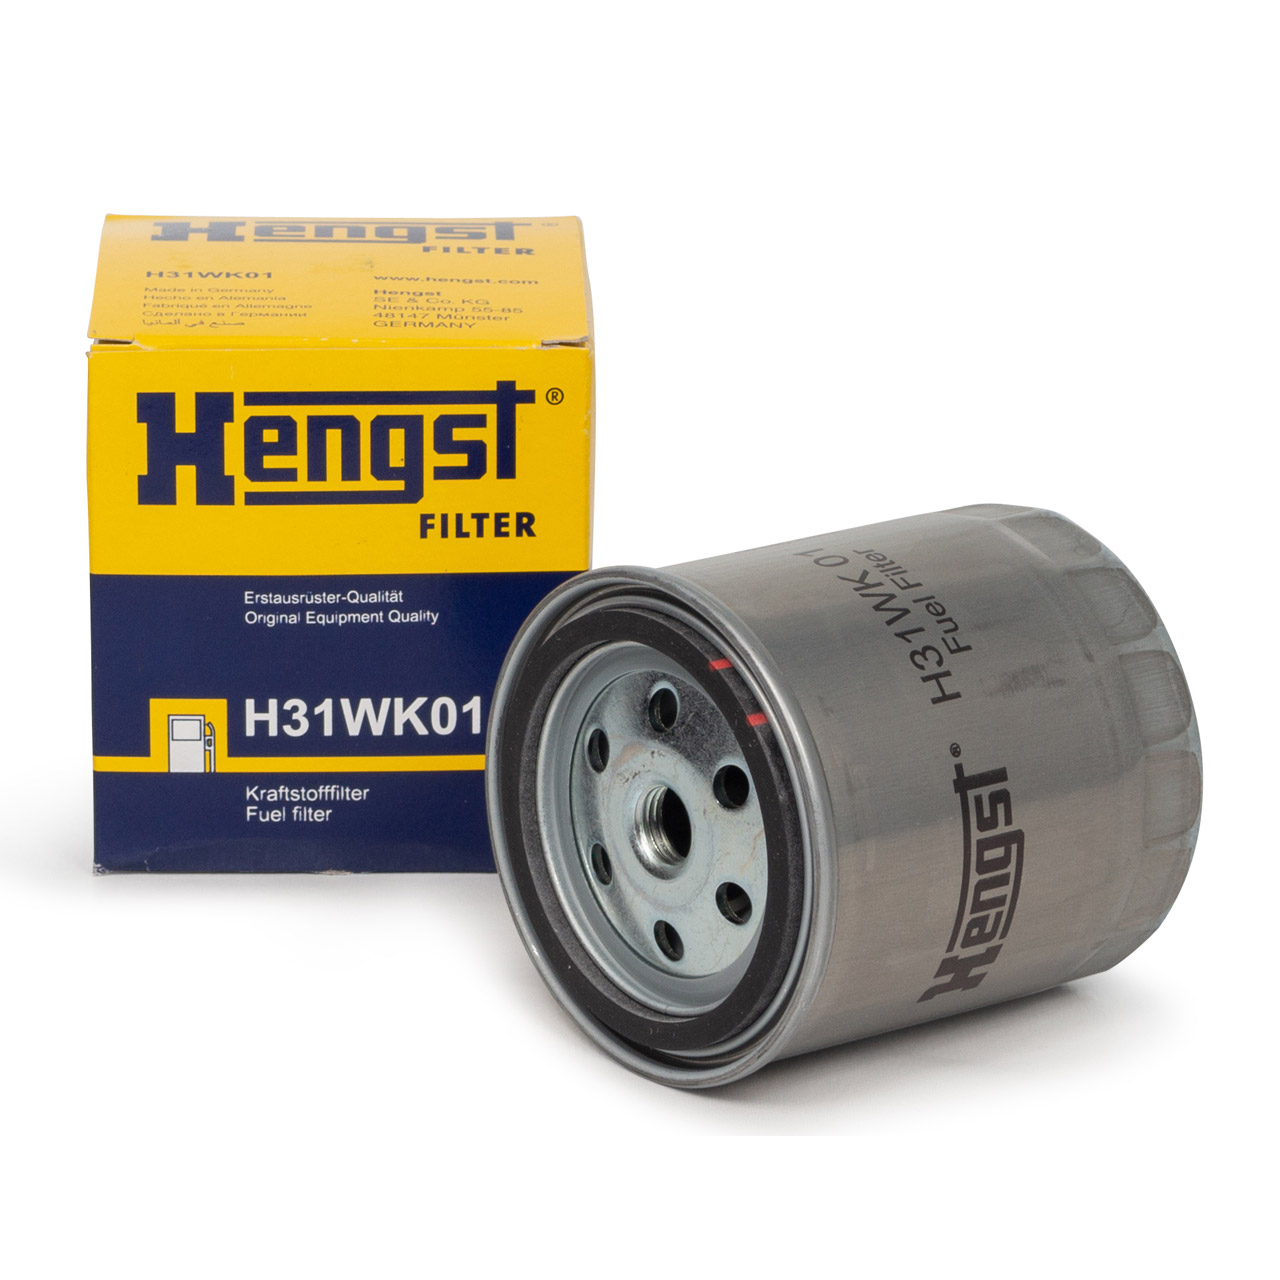 HENGST H31WK01 Kraftstofffilter Diesel für MERCEDES 100 (631) W460 W123 T1 T2